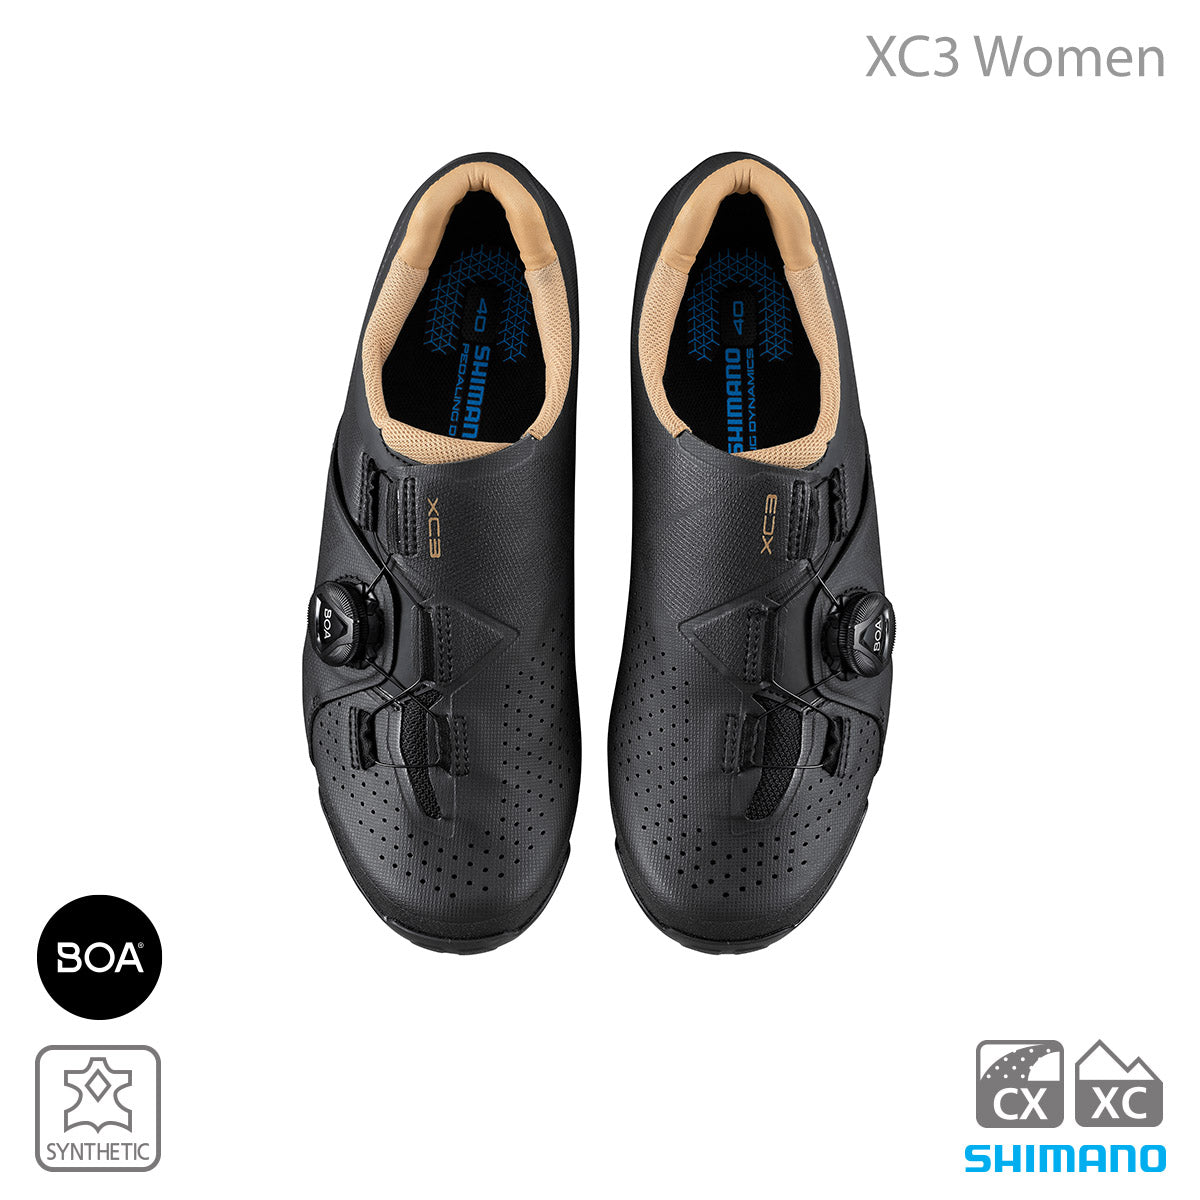 Shimano Women's Shoes XC3W SH-XC300W Black